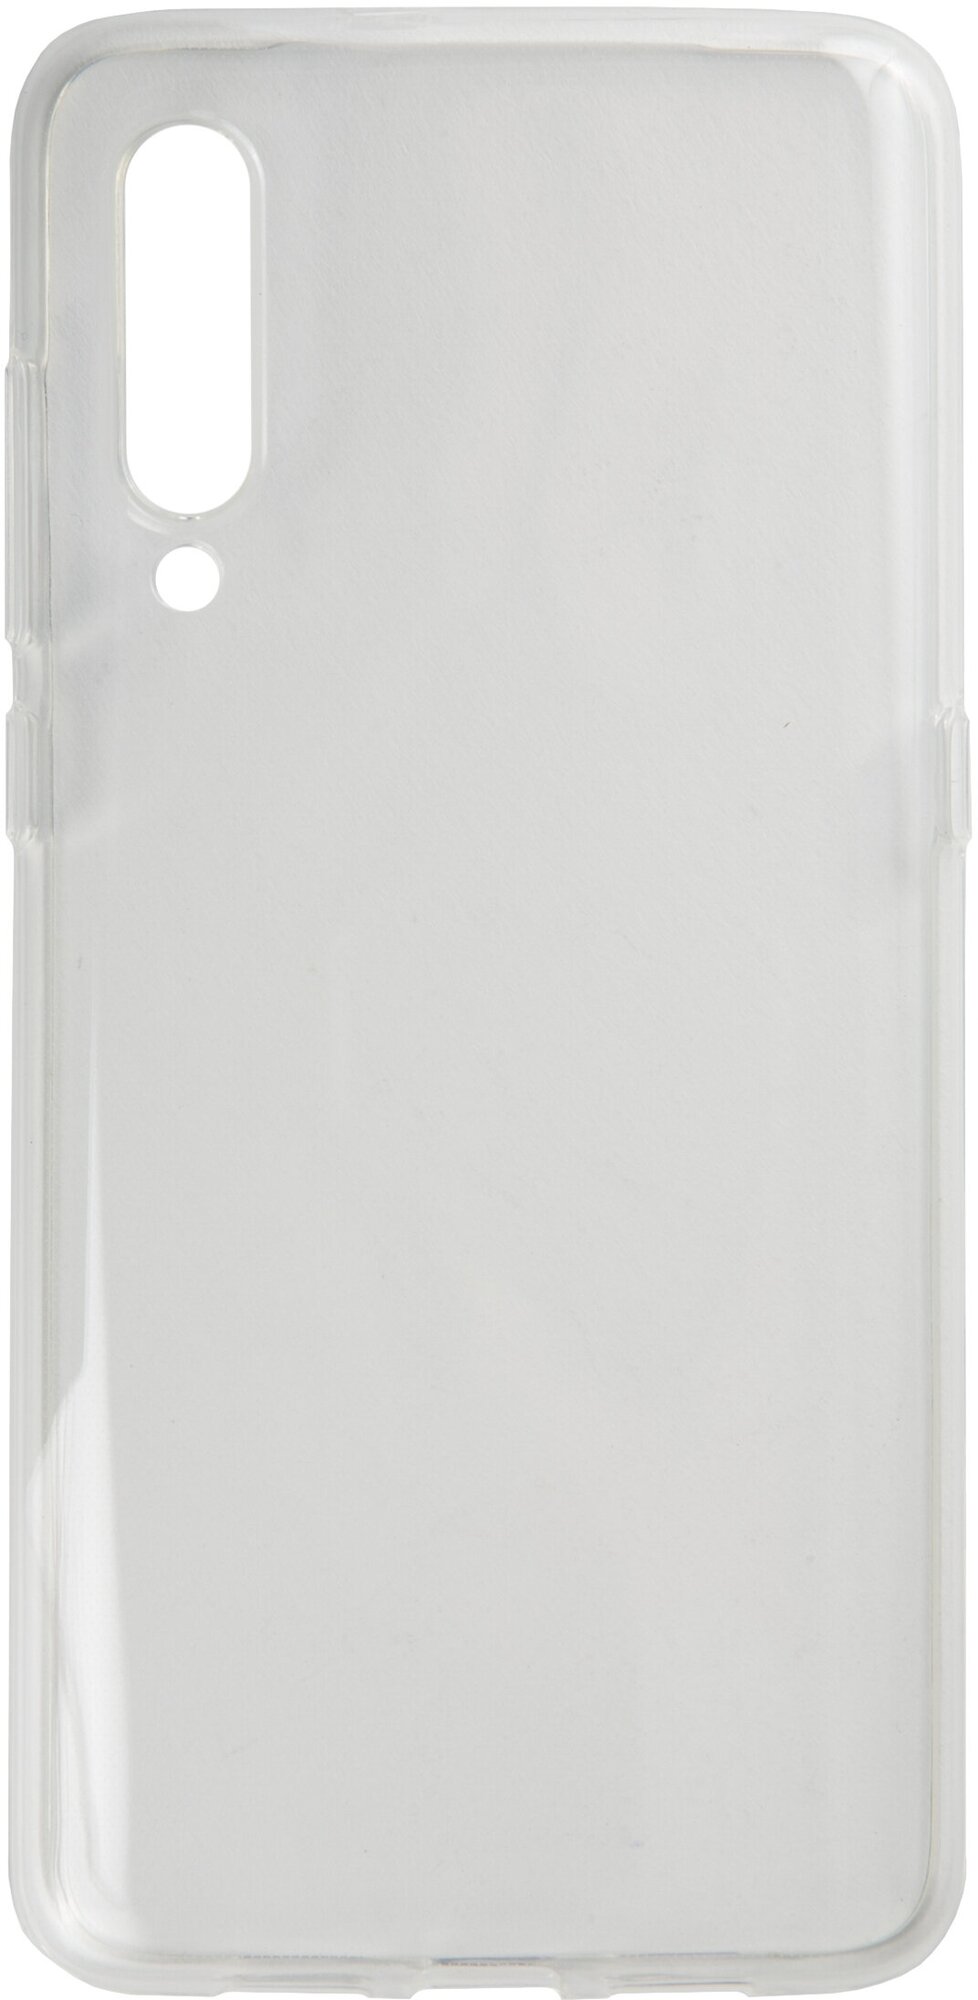 Накладка на Xiaomi Mi 9/Силиконовый чехол для Xiaomi/Бампер на Ксиаоми Ми9/Защита от царапин/Чехол накладка силикон, прозрачный